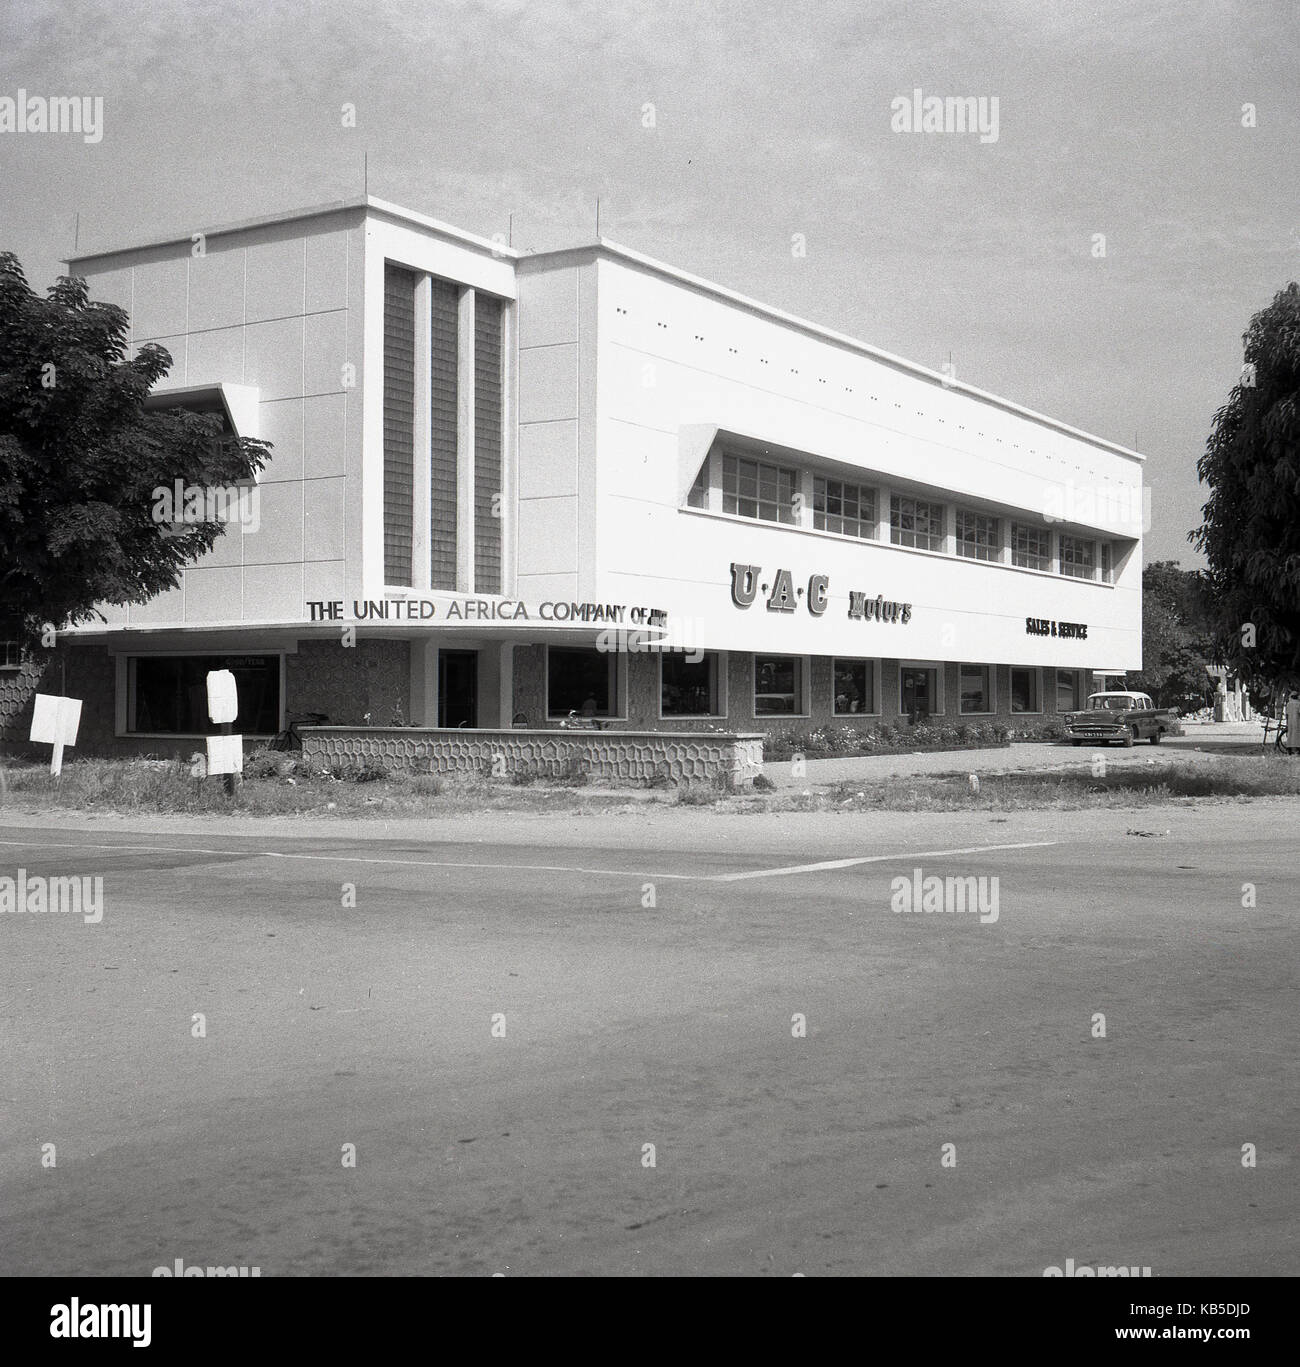 Années 1950, historique, le Nigeria, l'Afrique de l'Ouest, l'image montre l'extérieur de l'impressionnant moteur Vente et services showroom et bureaux de l'Entreprise Afrique du Nigeria. Banque D'Images